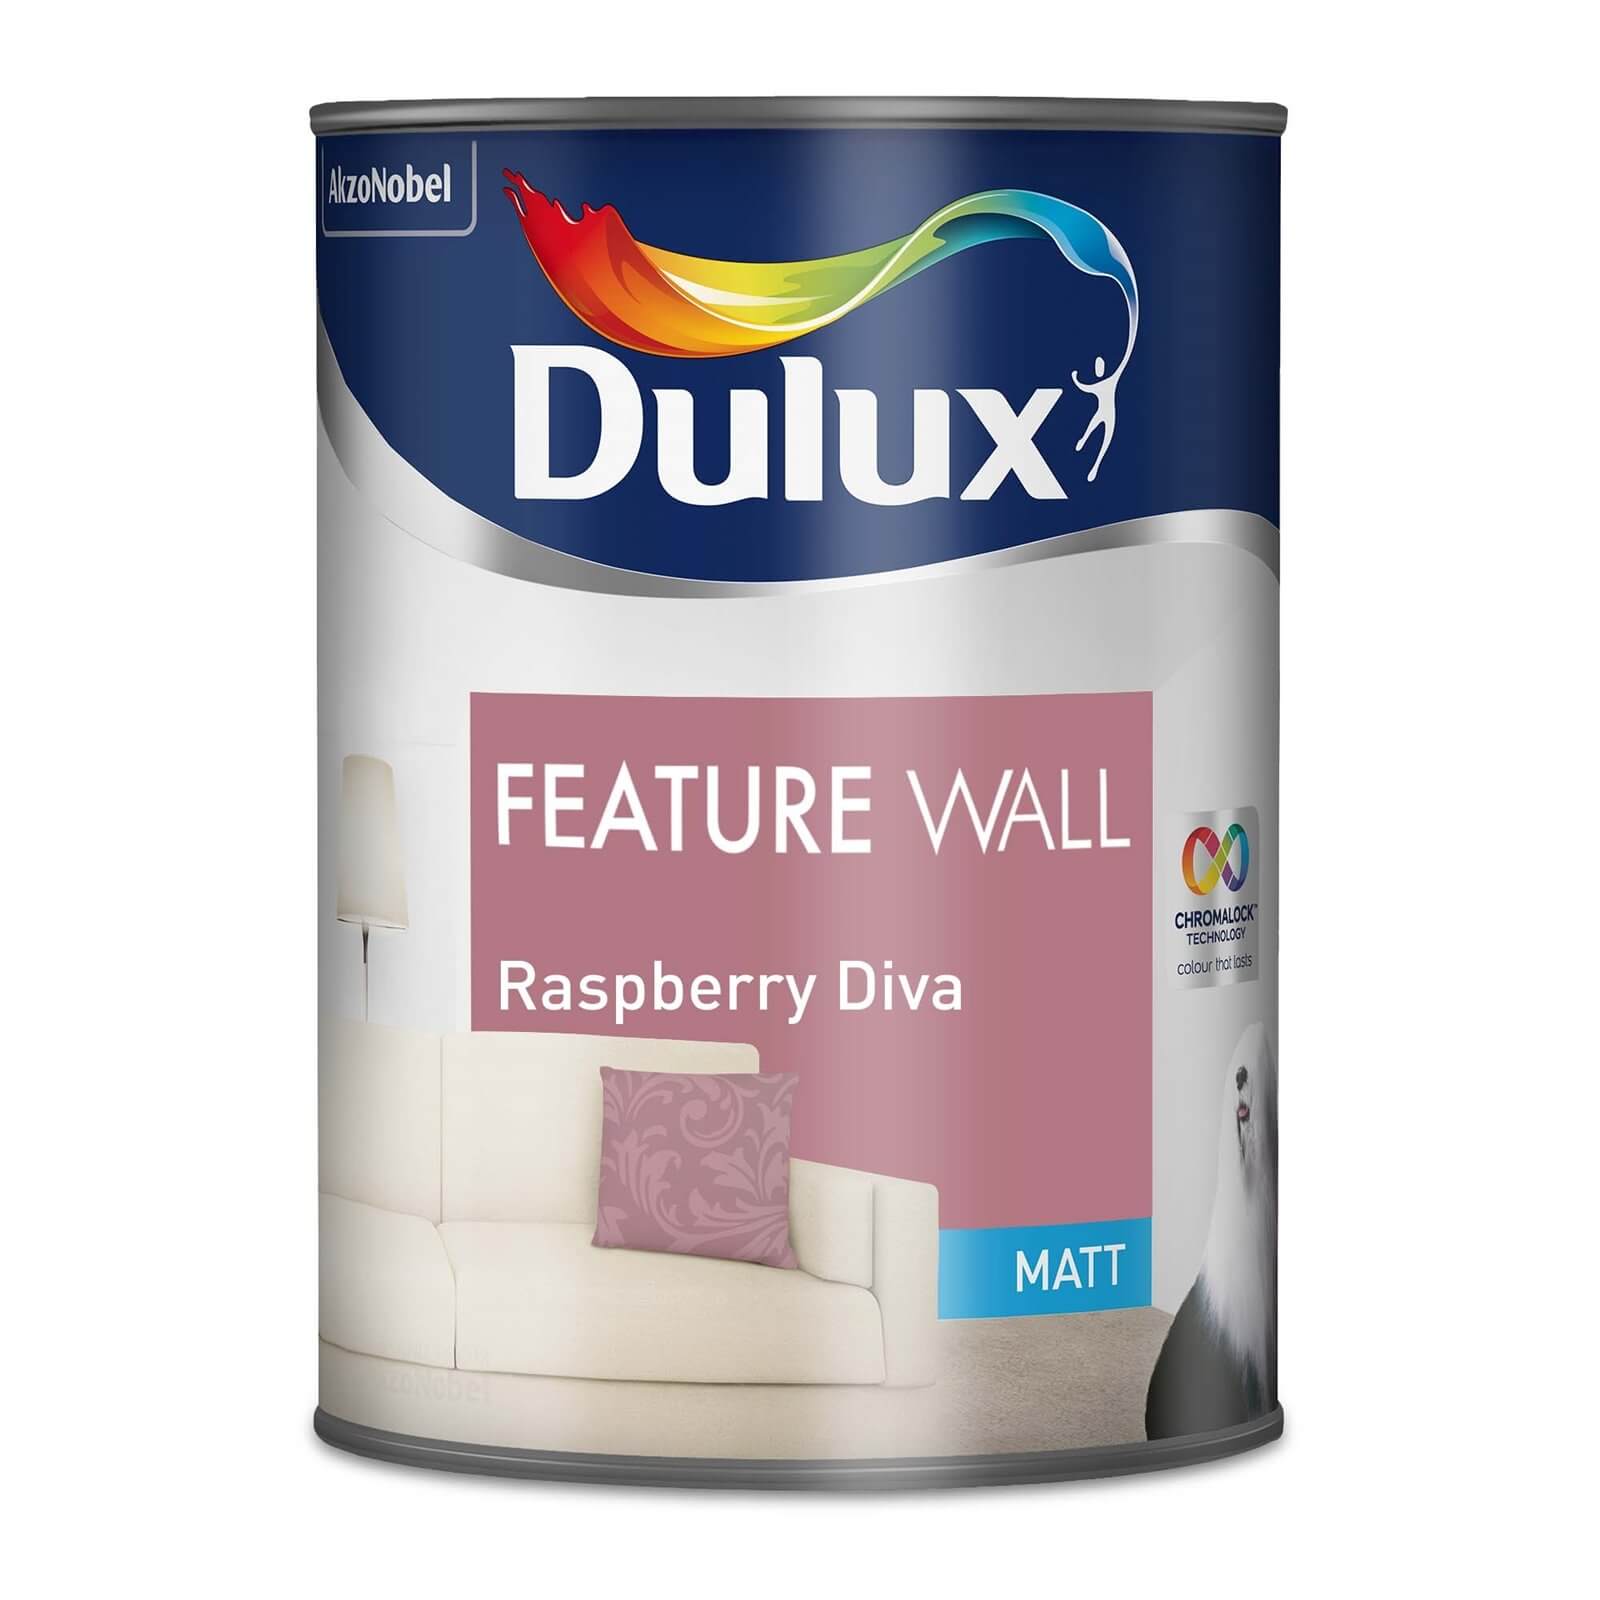 Dulux Feature Wall Raspberry Diva - Matt Emulsion Paint - 1.25L